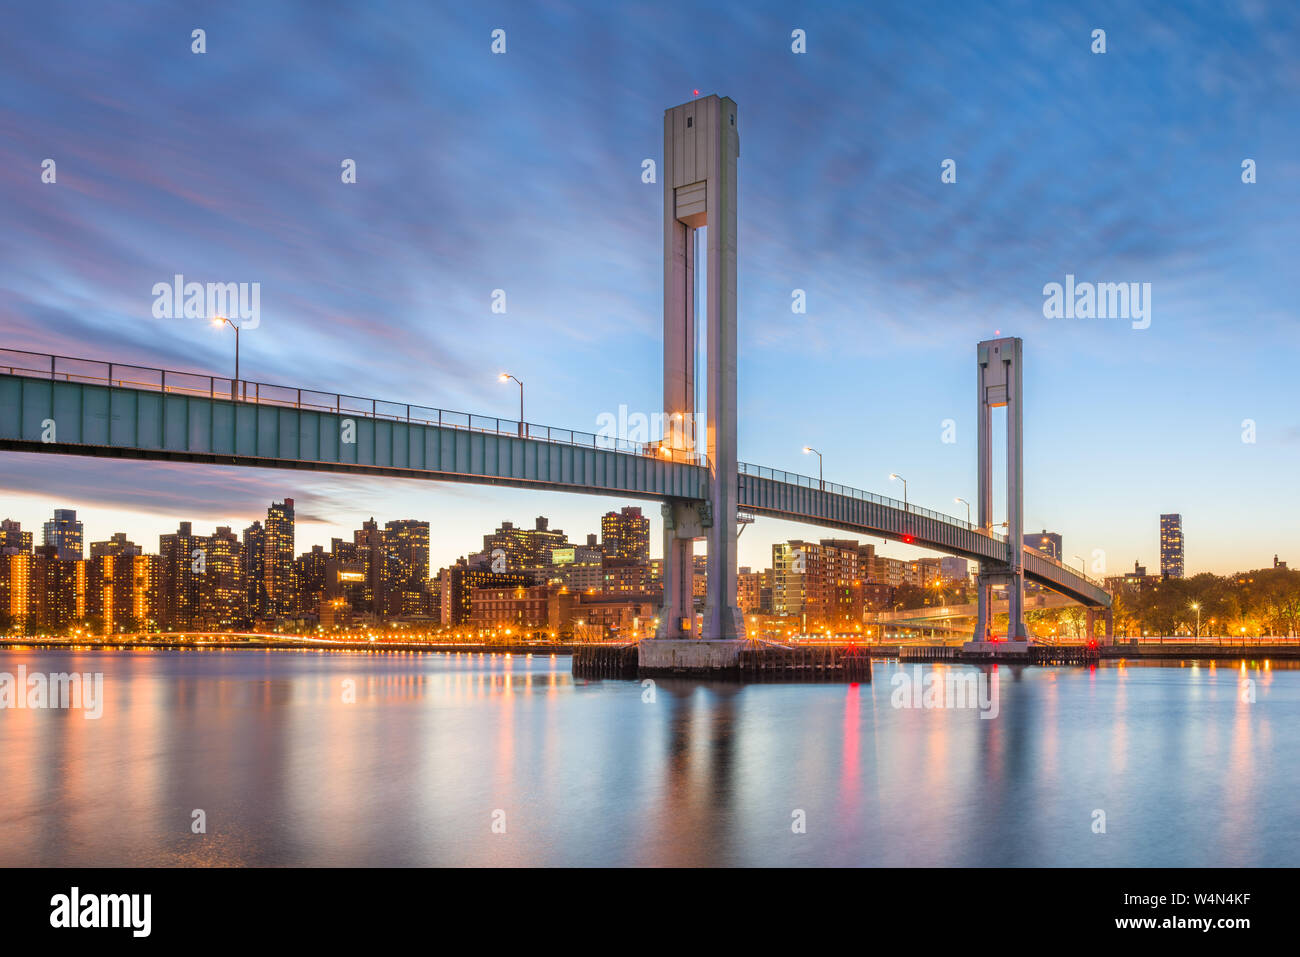 L'île de quartiers pont traversant la rivière Harlem entre l'île de Manhattan et l'île de quartiers dans la ville de New York. Banque D'Images